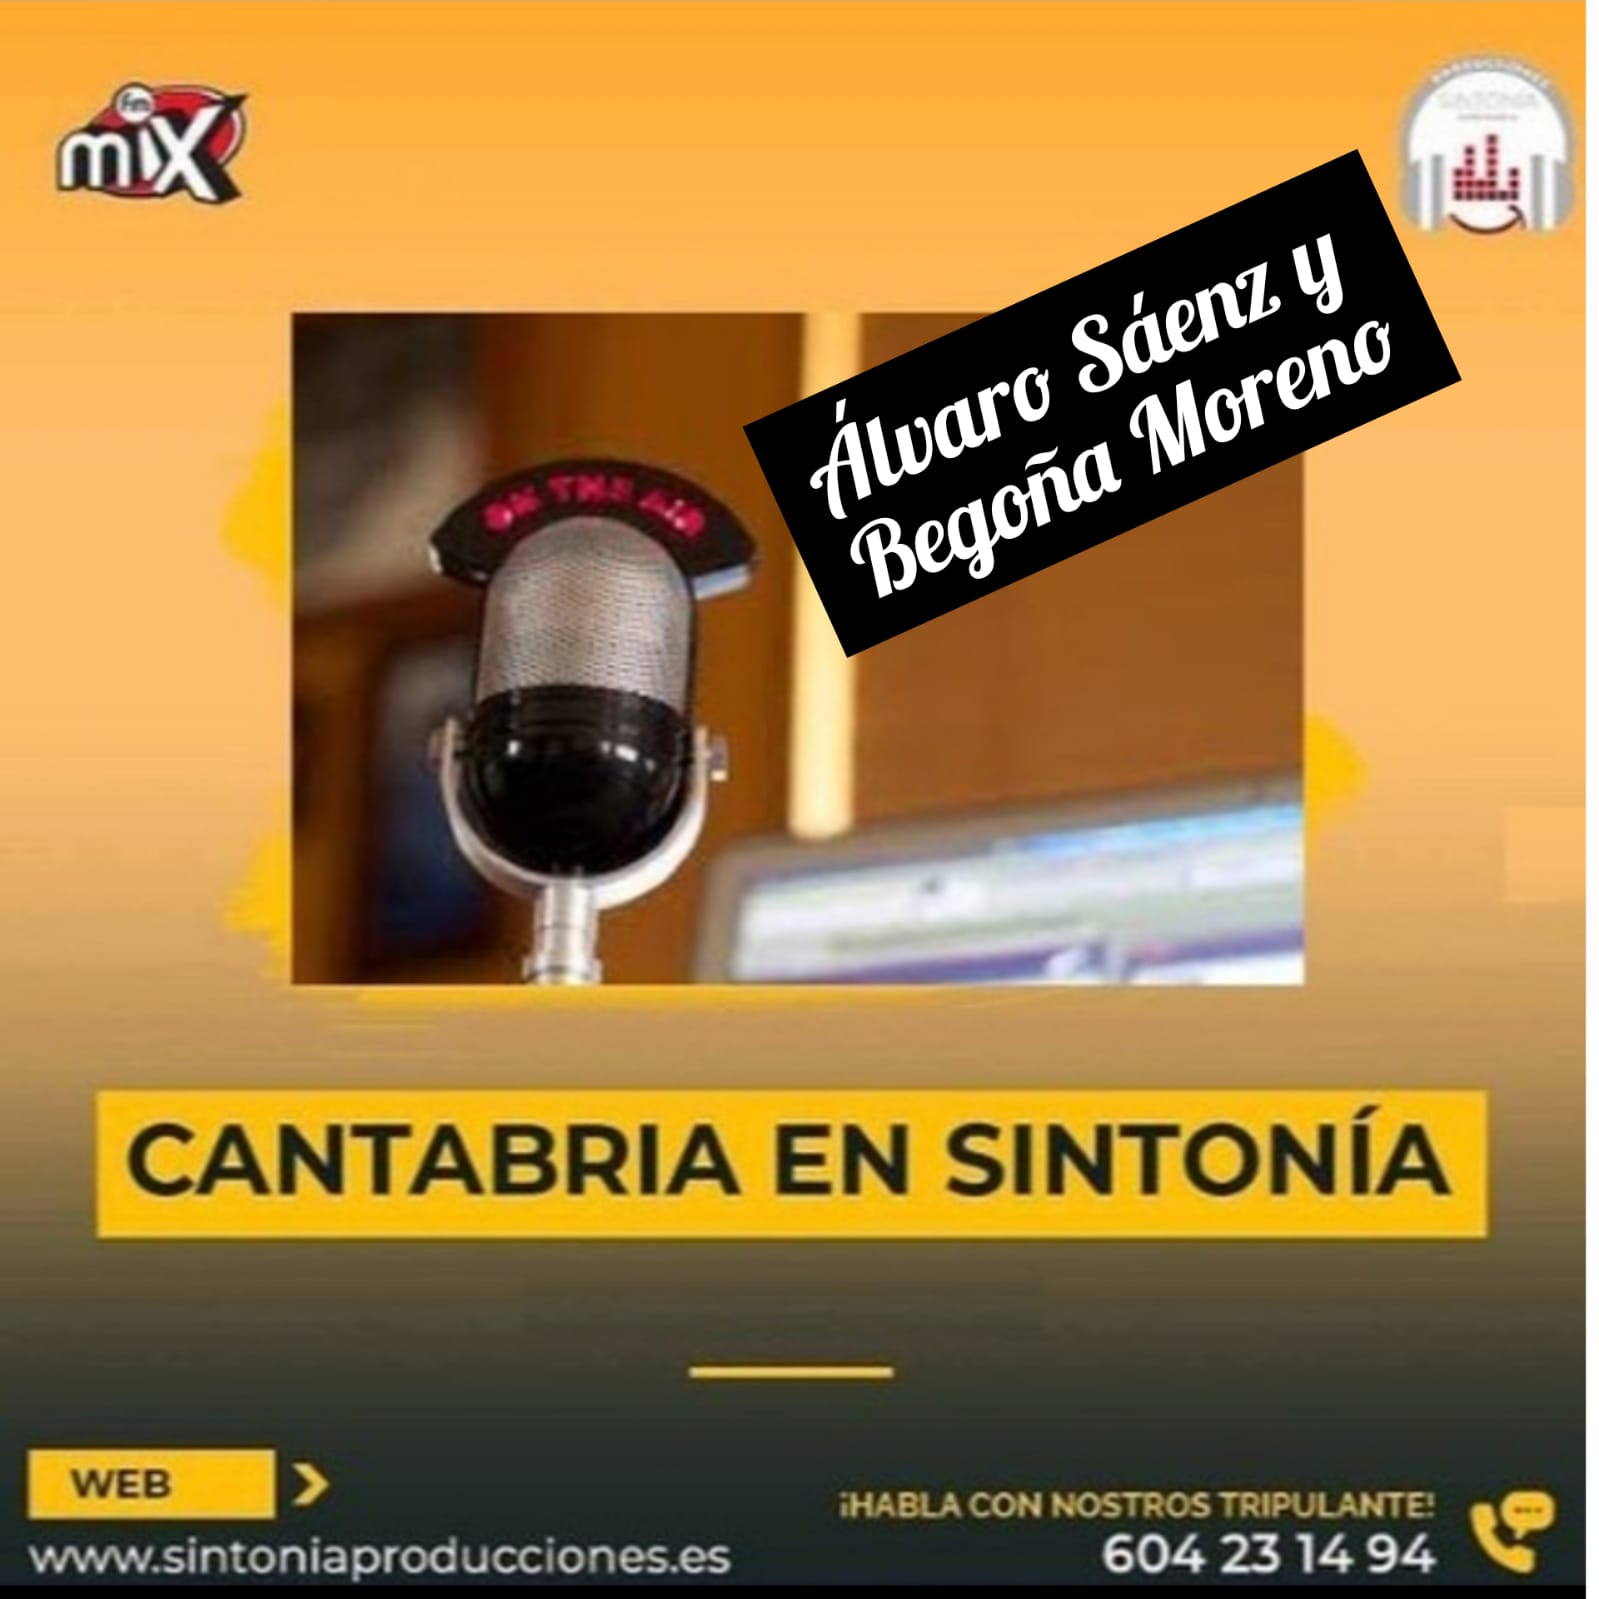 Cantabria en Sintonía en Mix FM. Viernes 29-04-2022